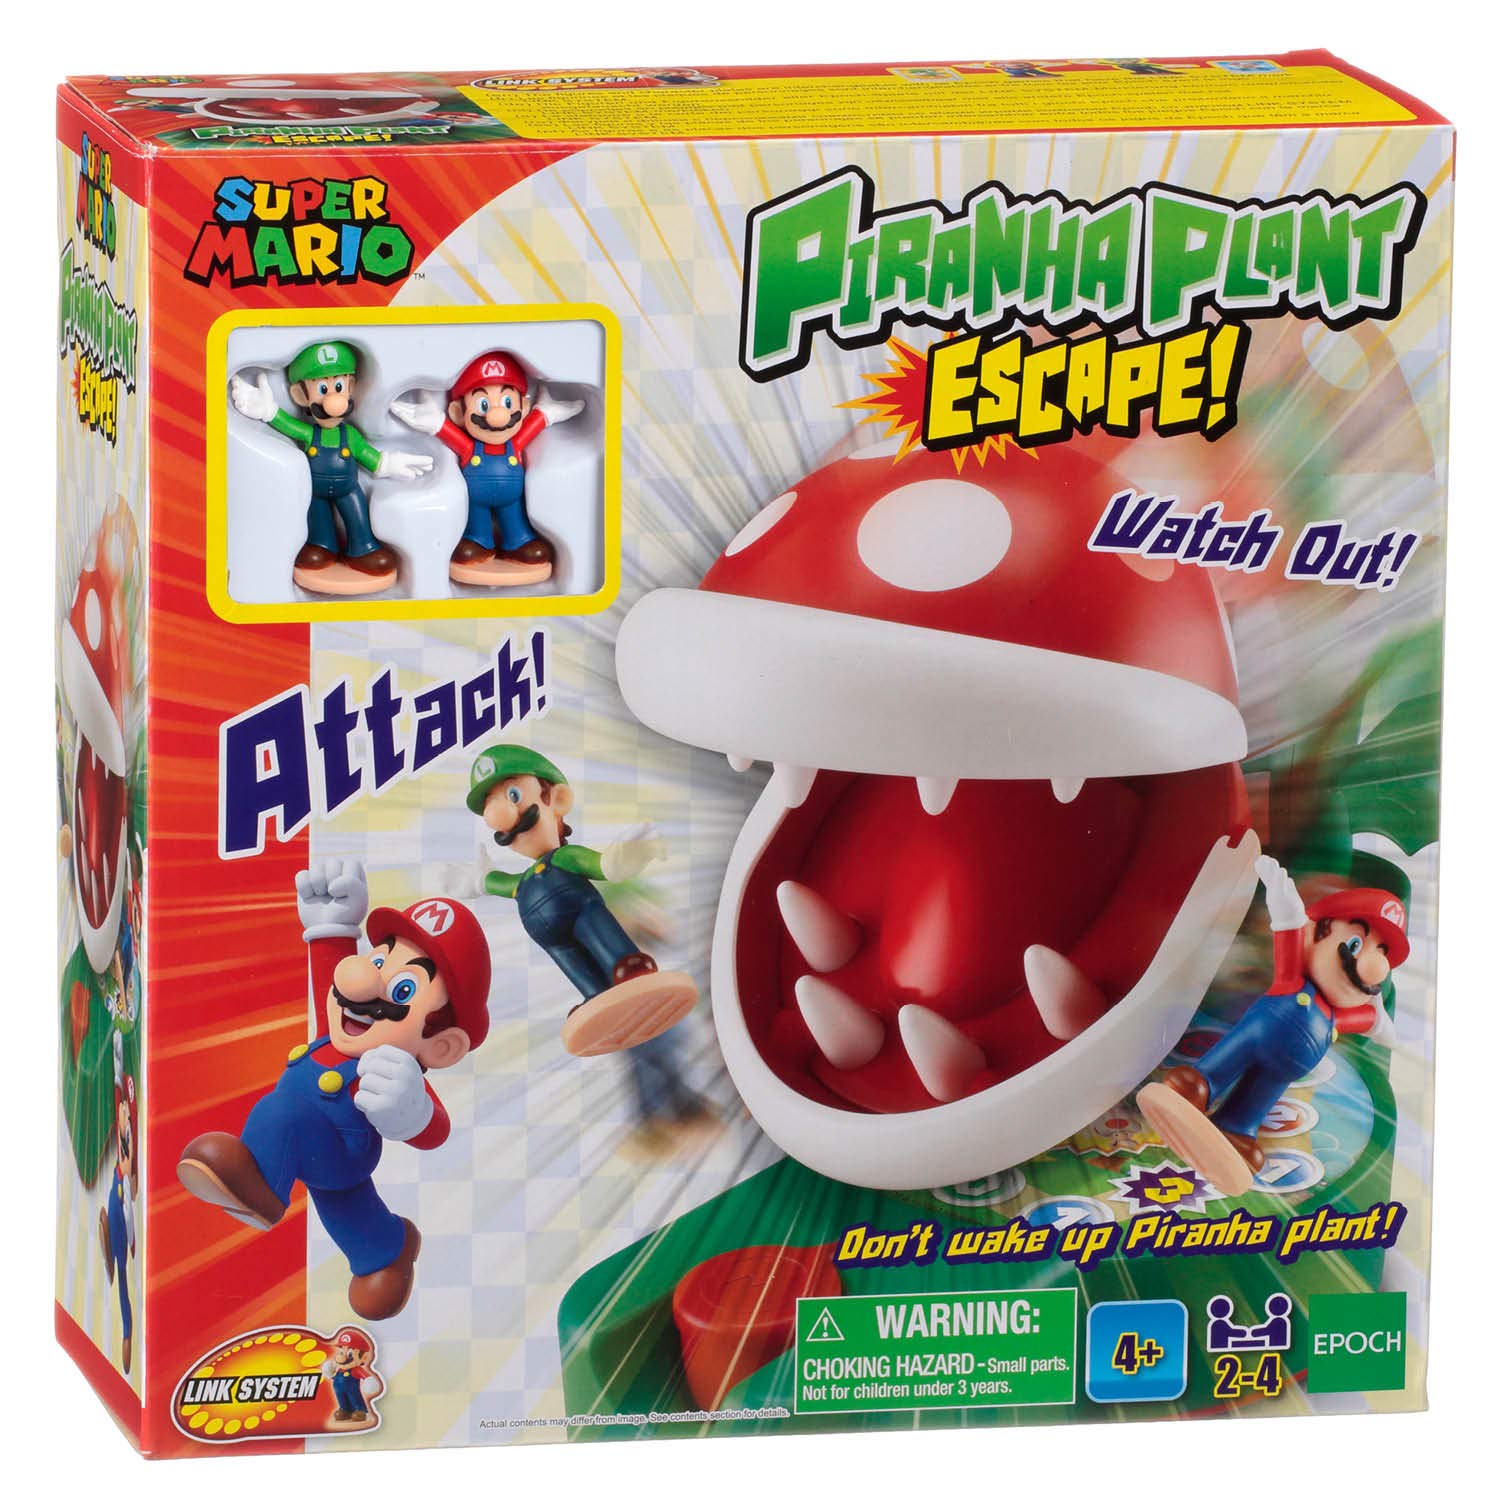 Super Mario(tm) 7357 Piranha Plant Escape